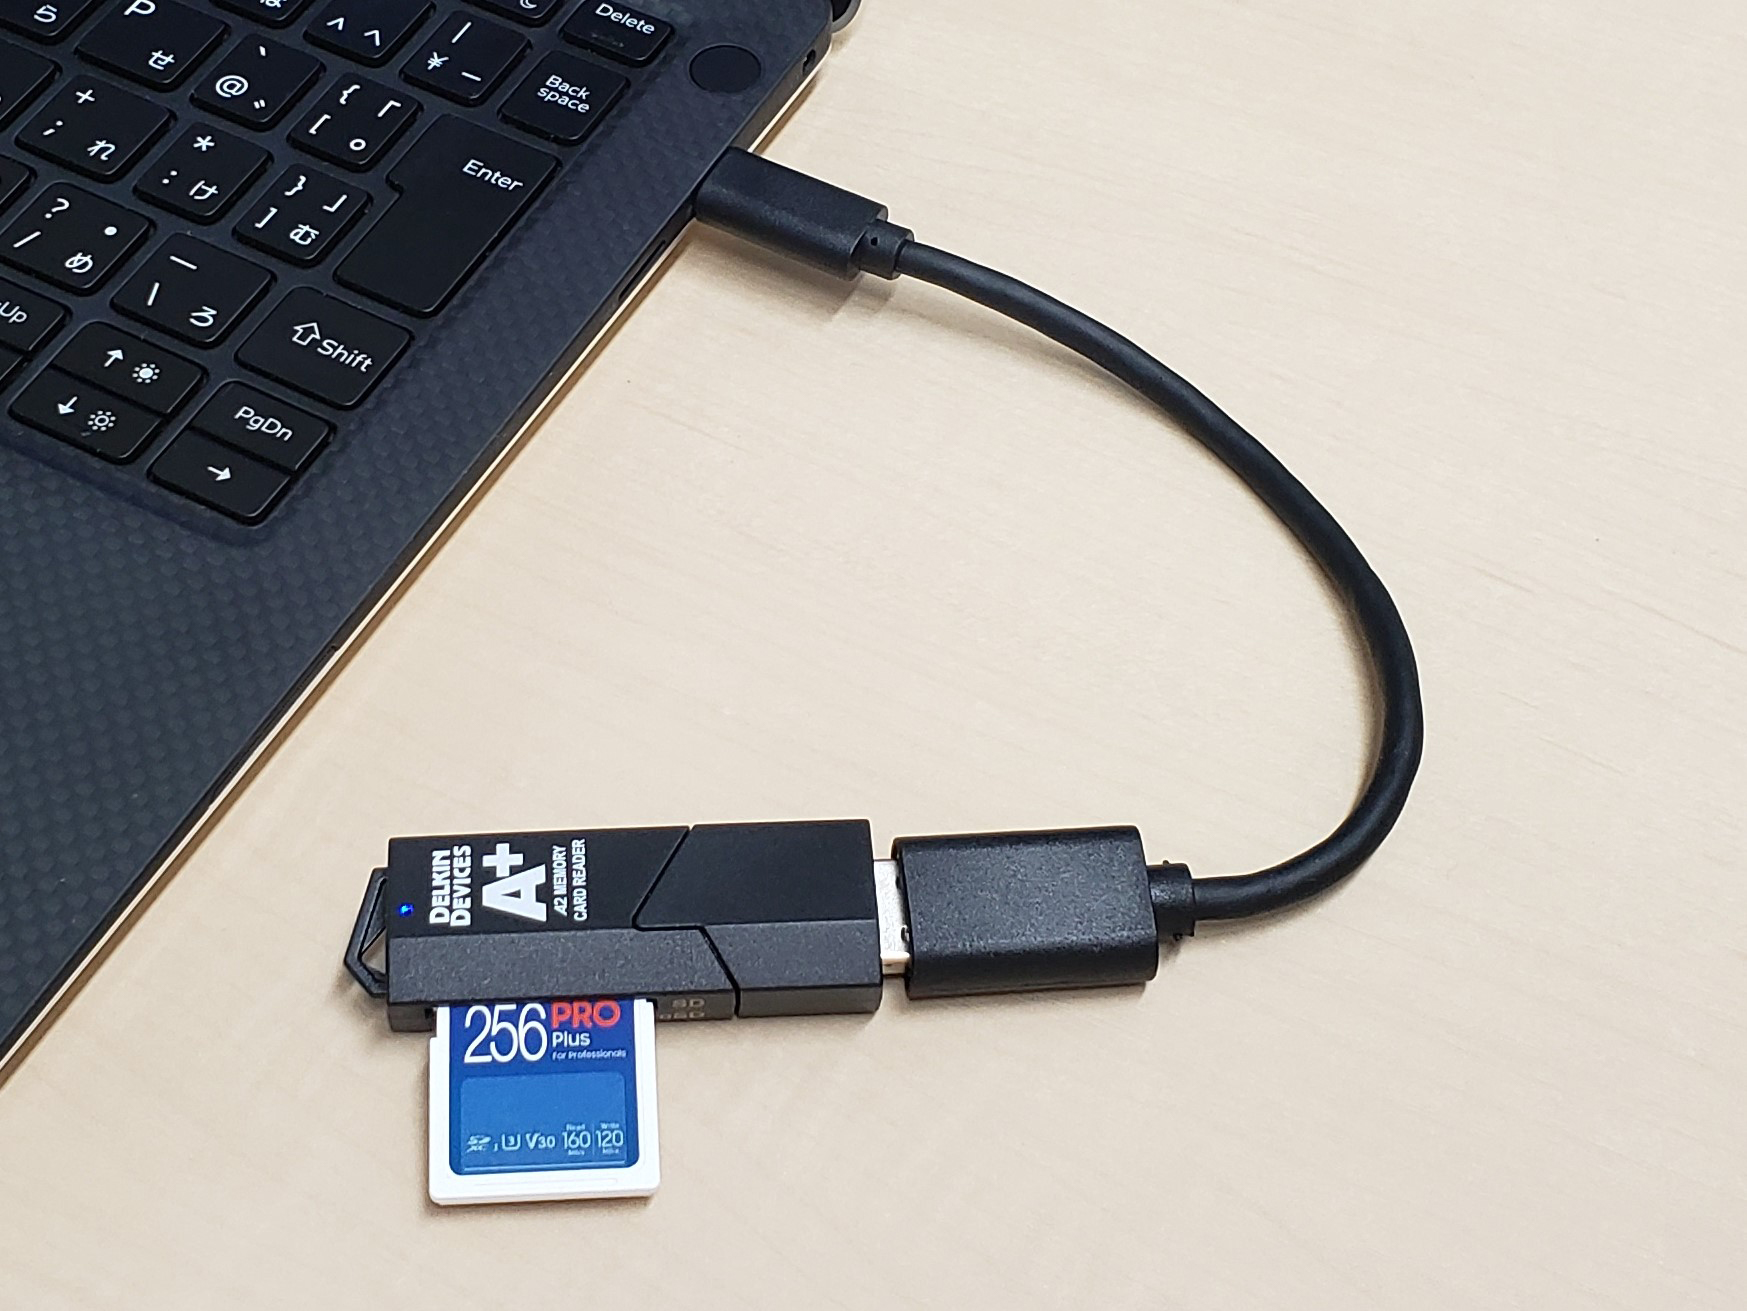 ITGマーケティング、サムスンのメモリーカードSD PRO Plus/microSD PRO